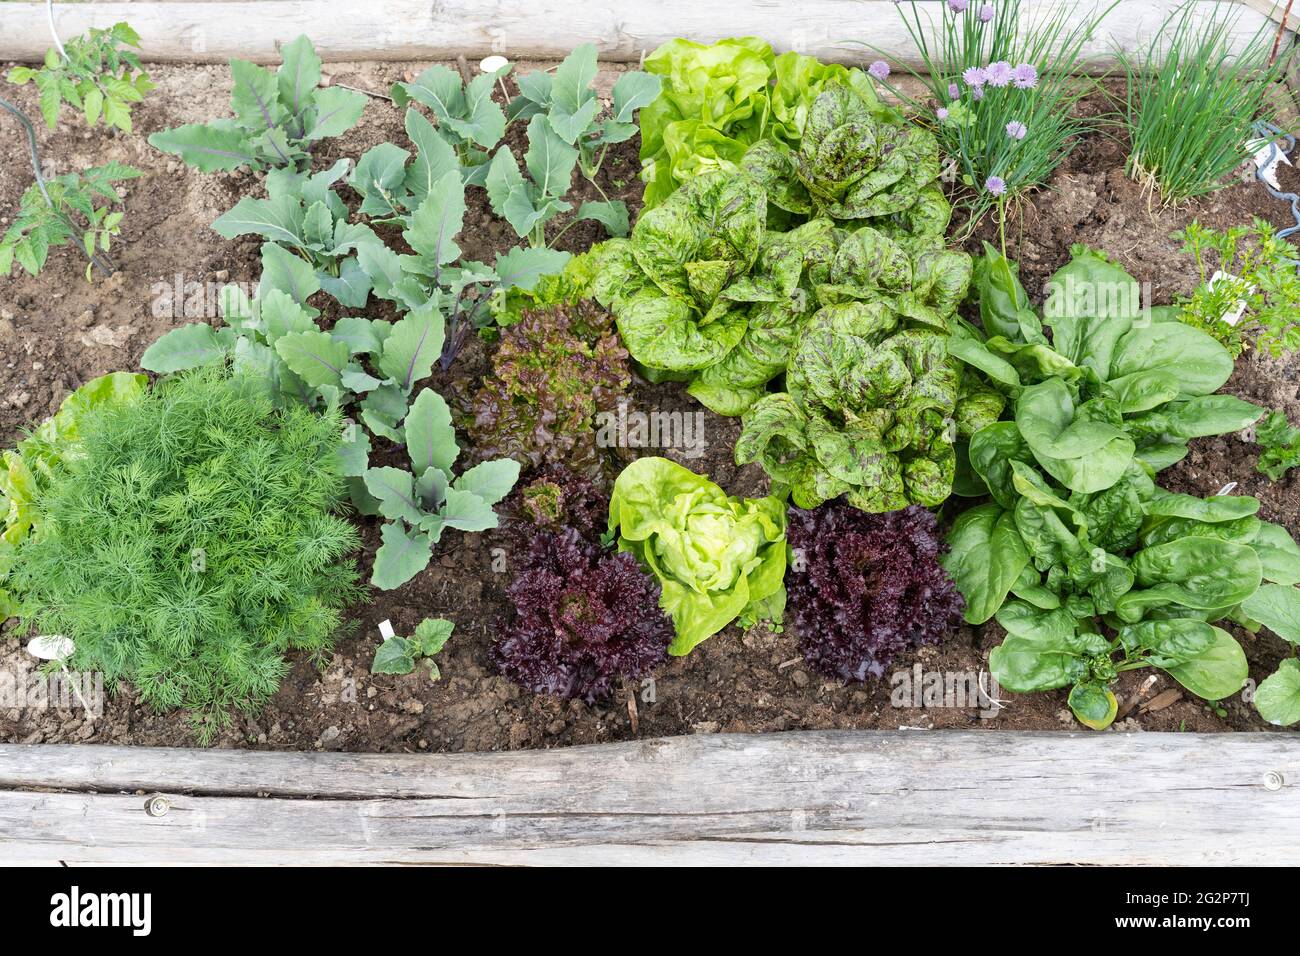 Kräuter und Gemüse - Kohlrabi, Salat, Spinat und Schnittlauch - wachsen in einem hölzernen Gemüse-/Kräutergartentopf Stockfoto